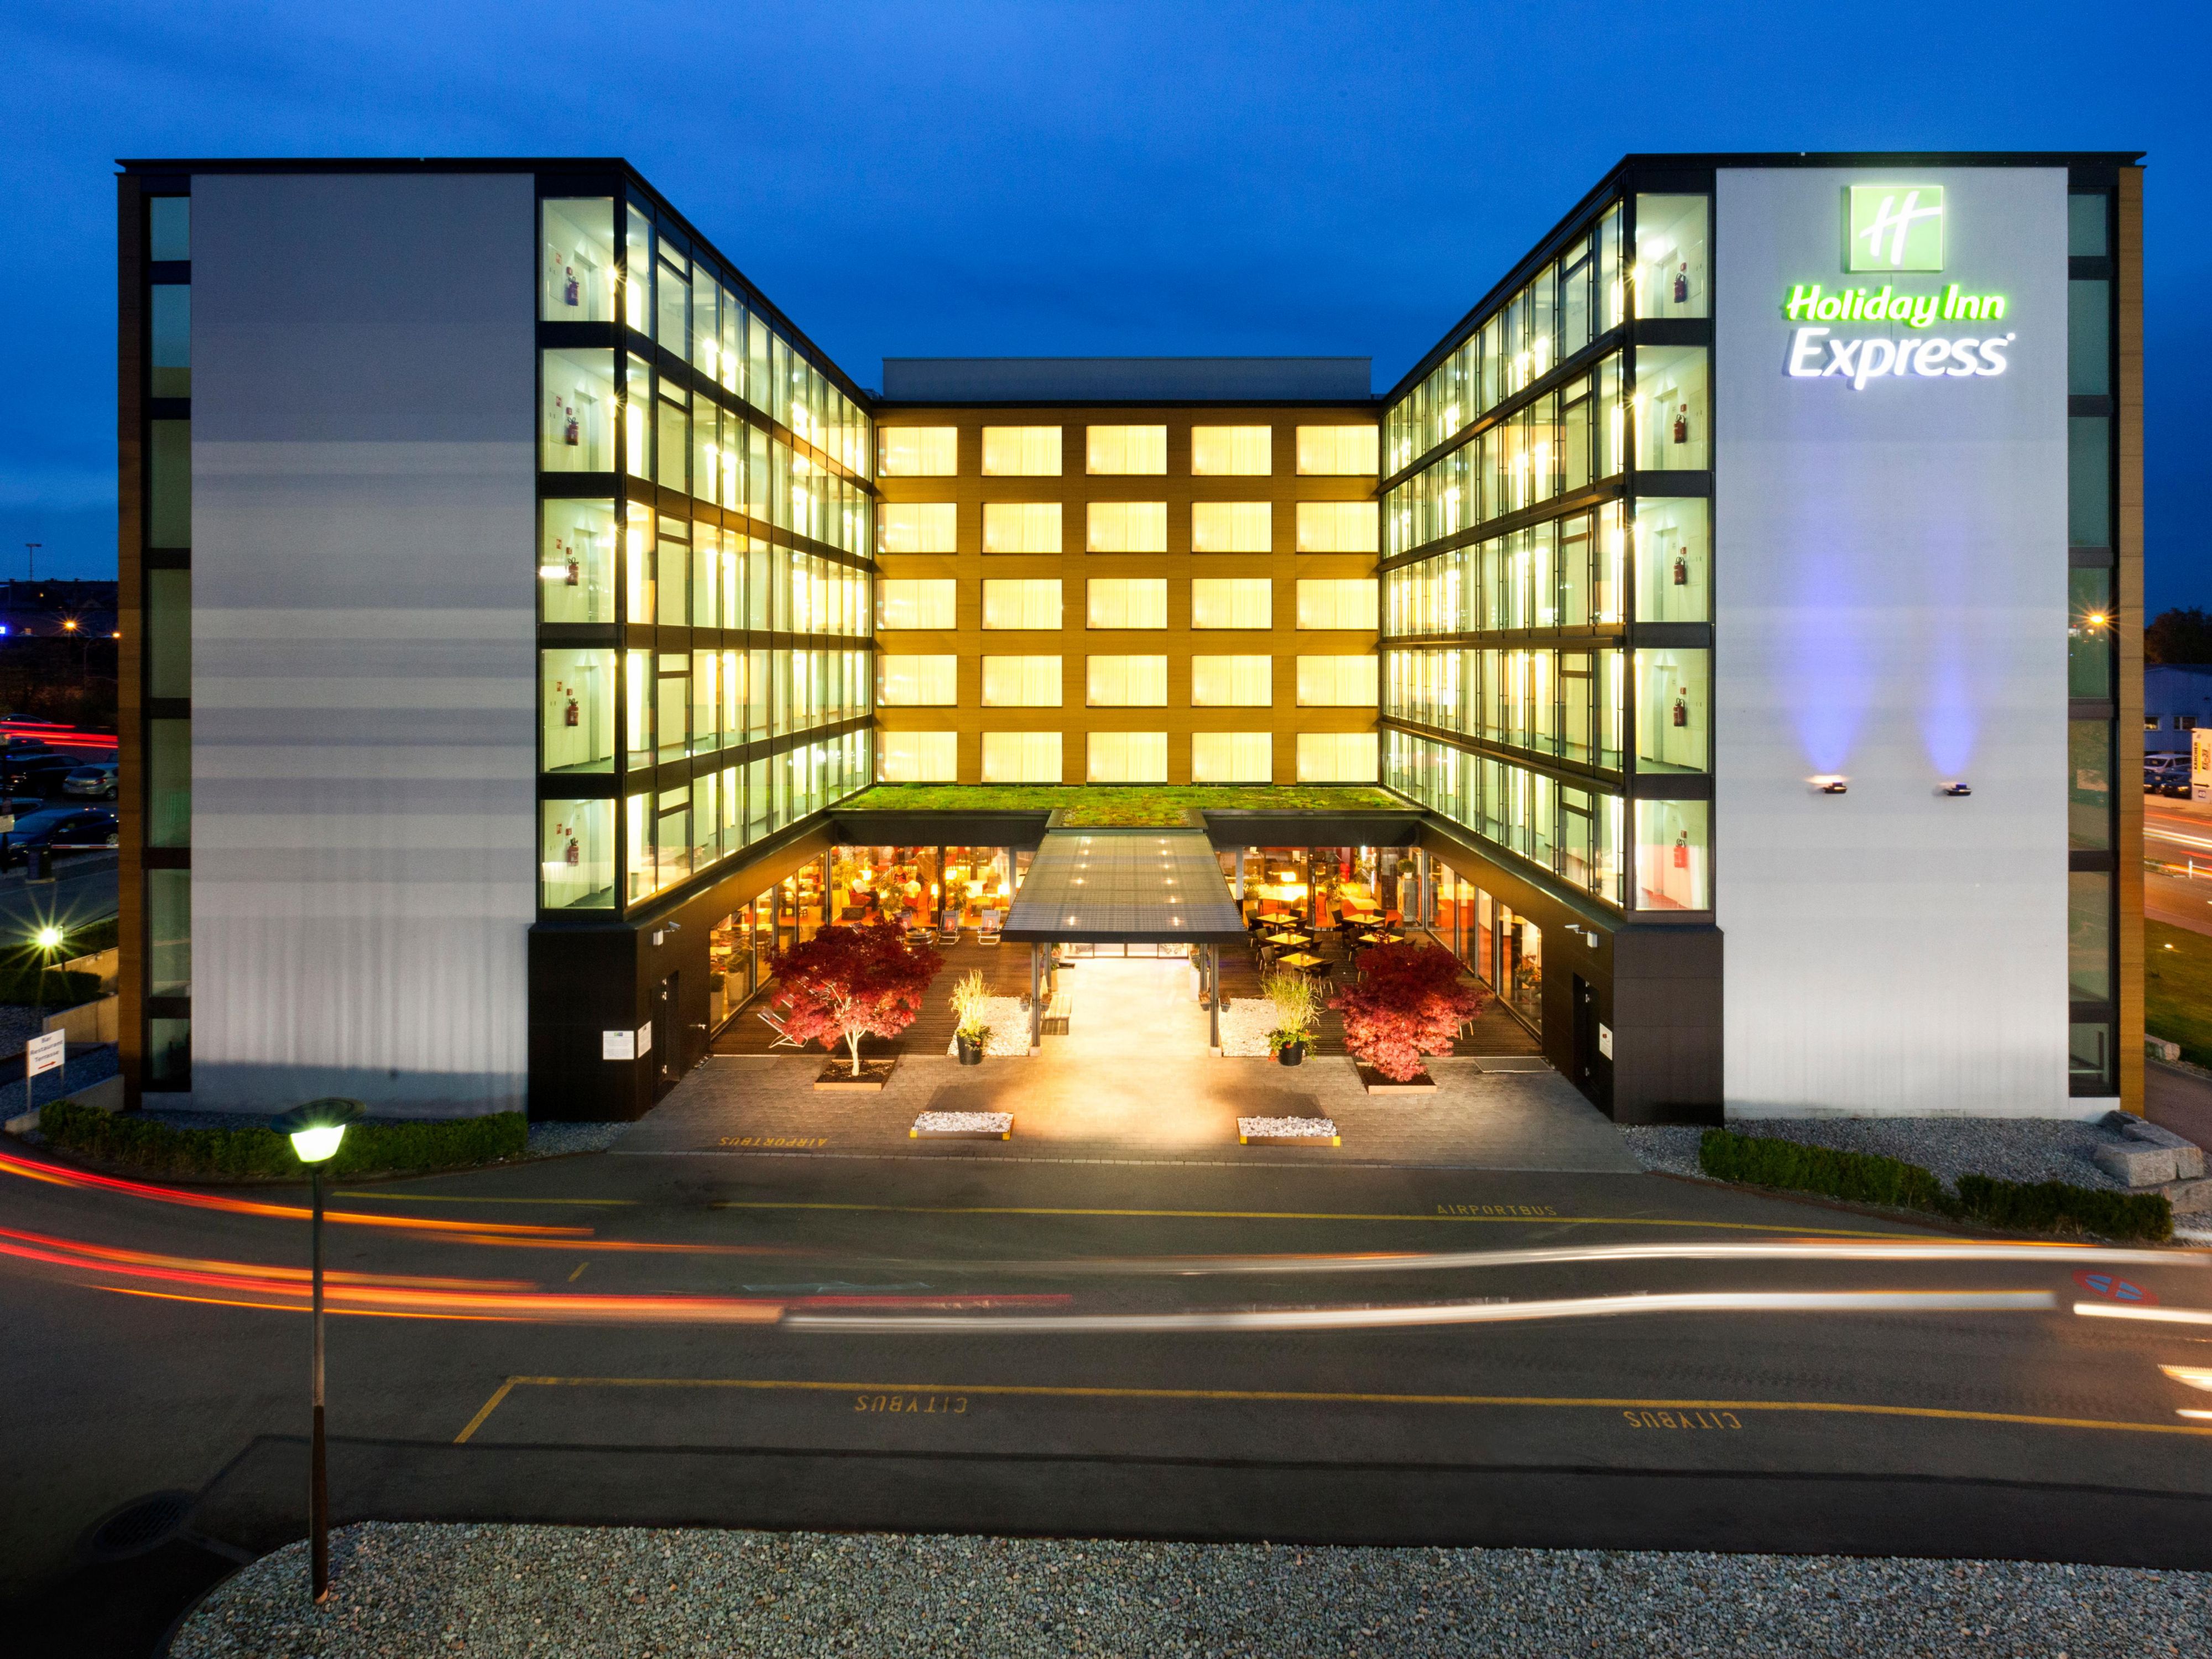 Hotels Near Airport: Holiday Inn Express Zürich Airport